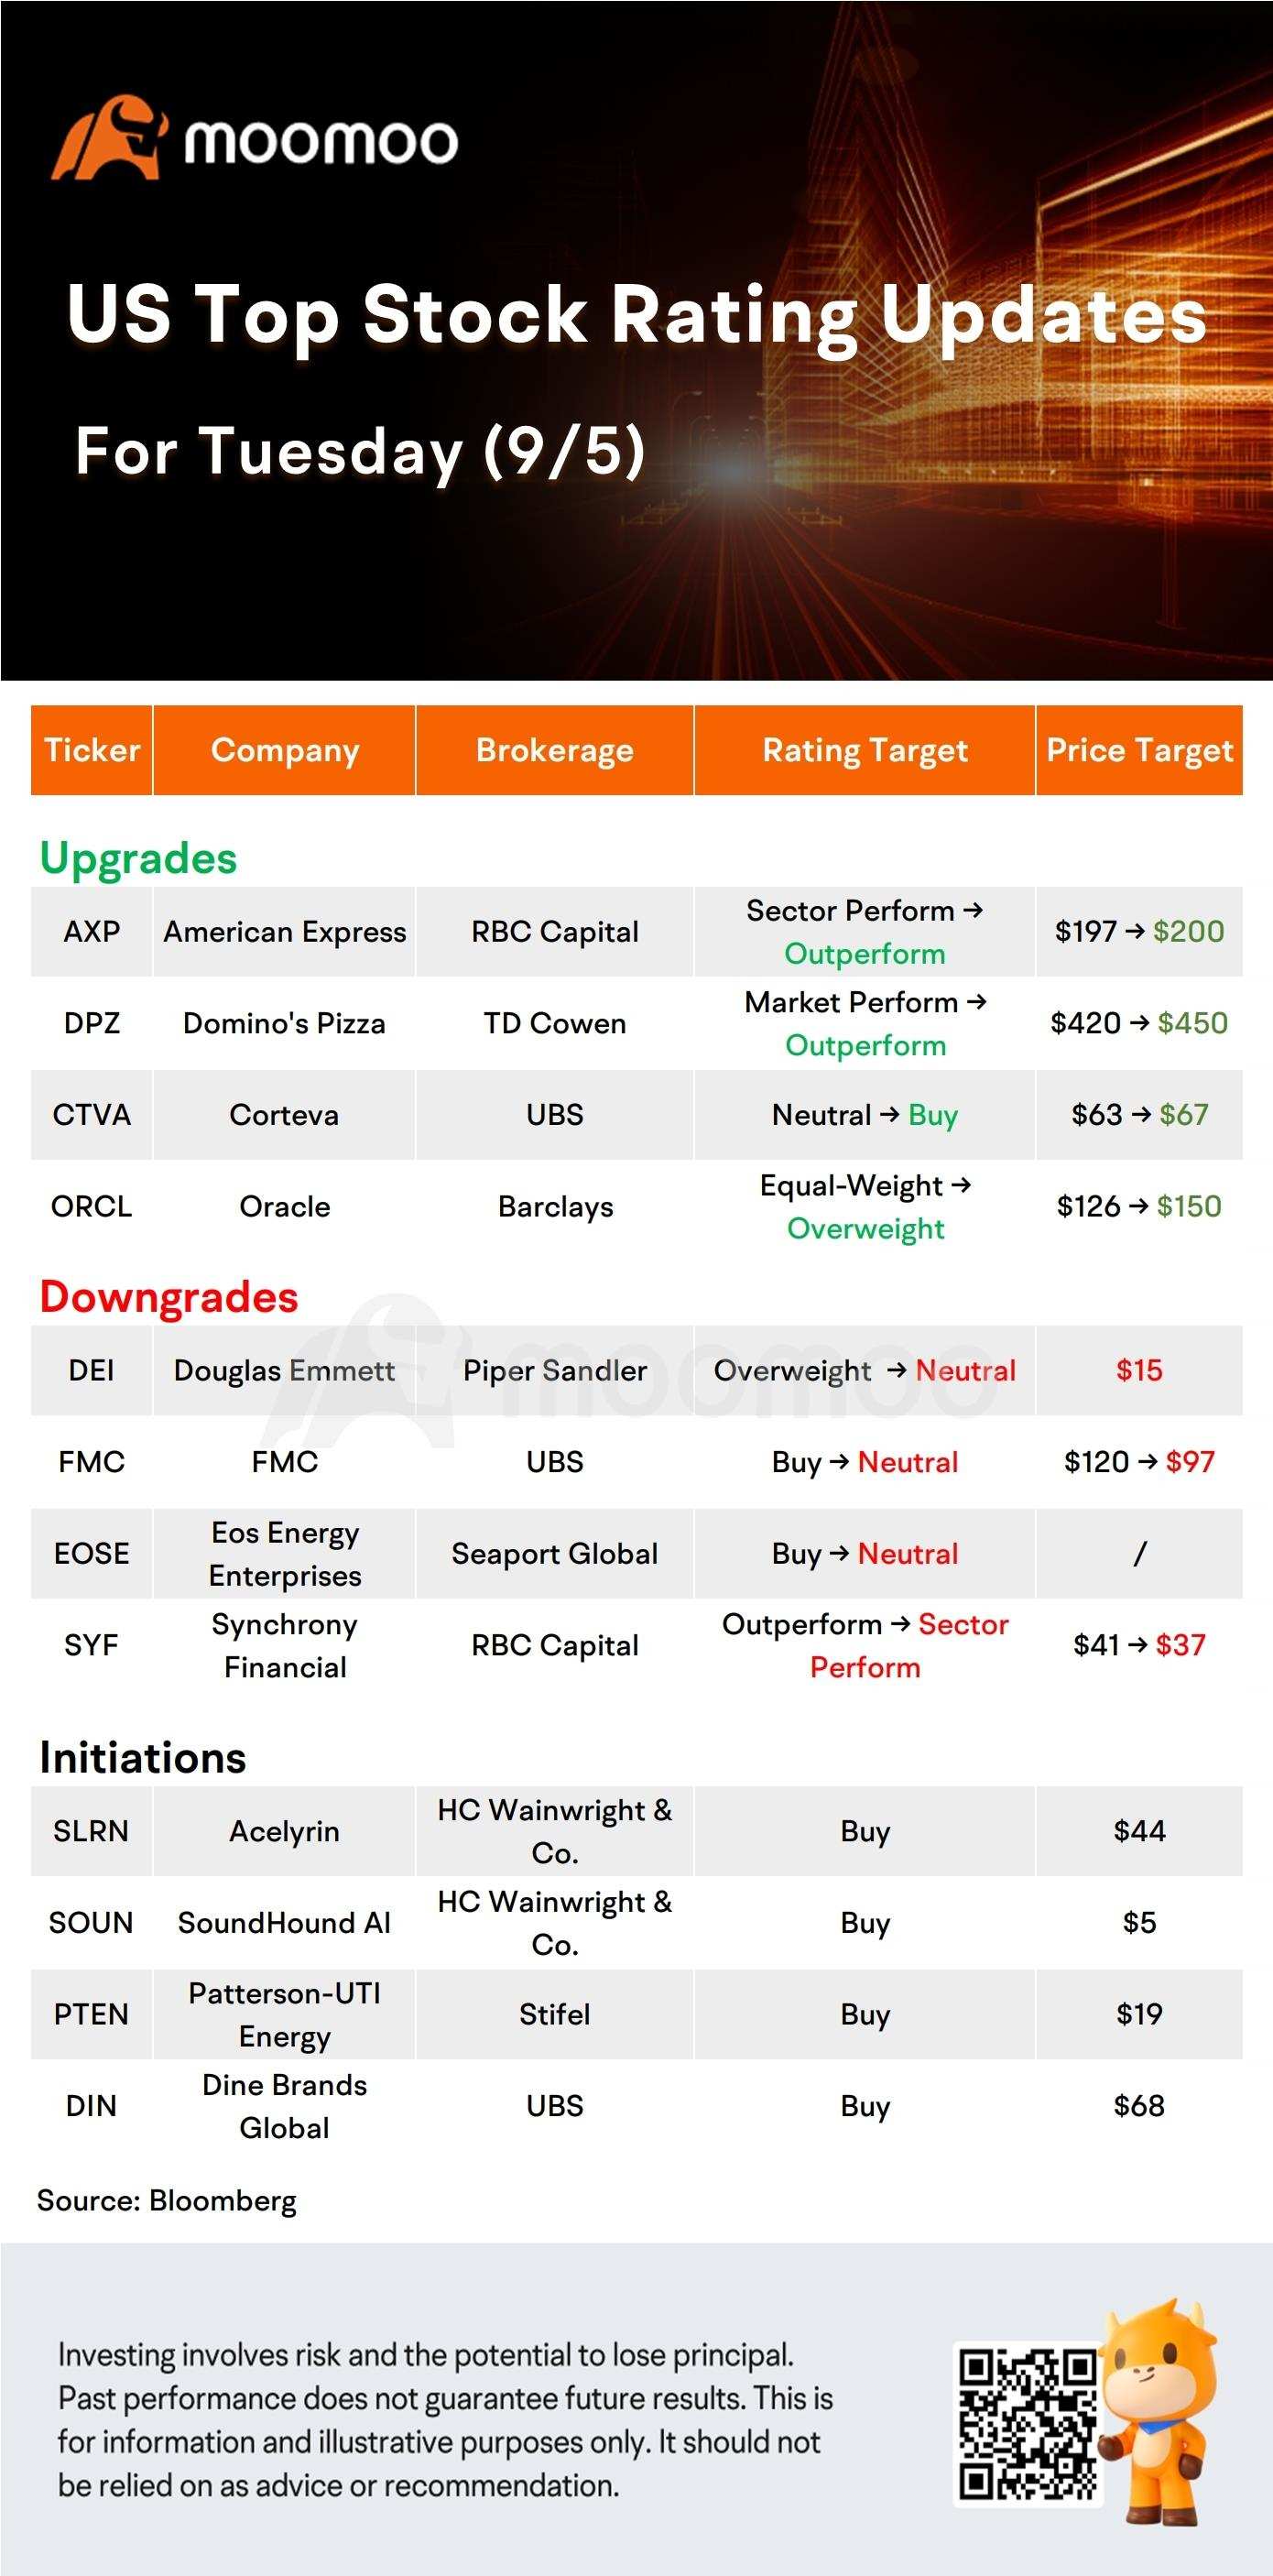 今日のプレマーケット株式市場での株価変動とトップレーティング：ORCL、AXP、ABNB、LOW、その他